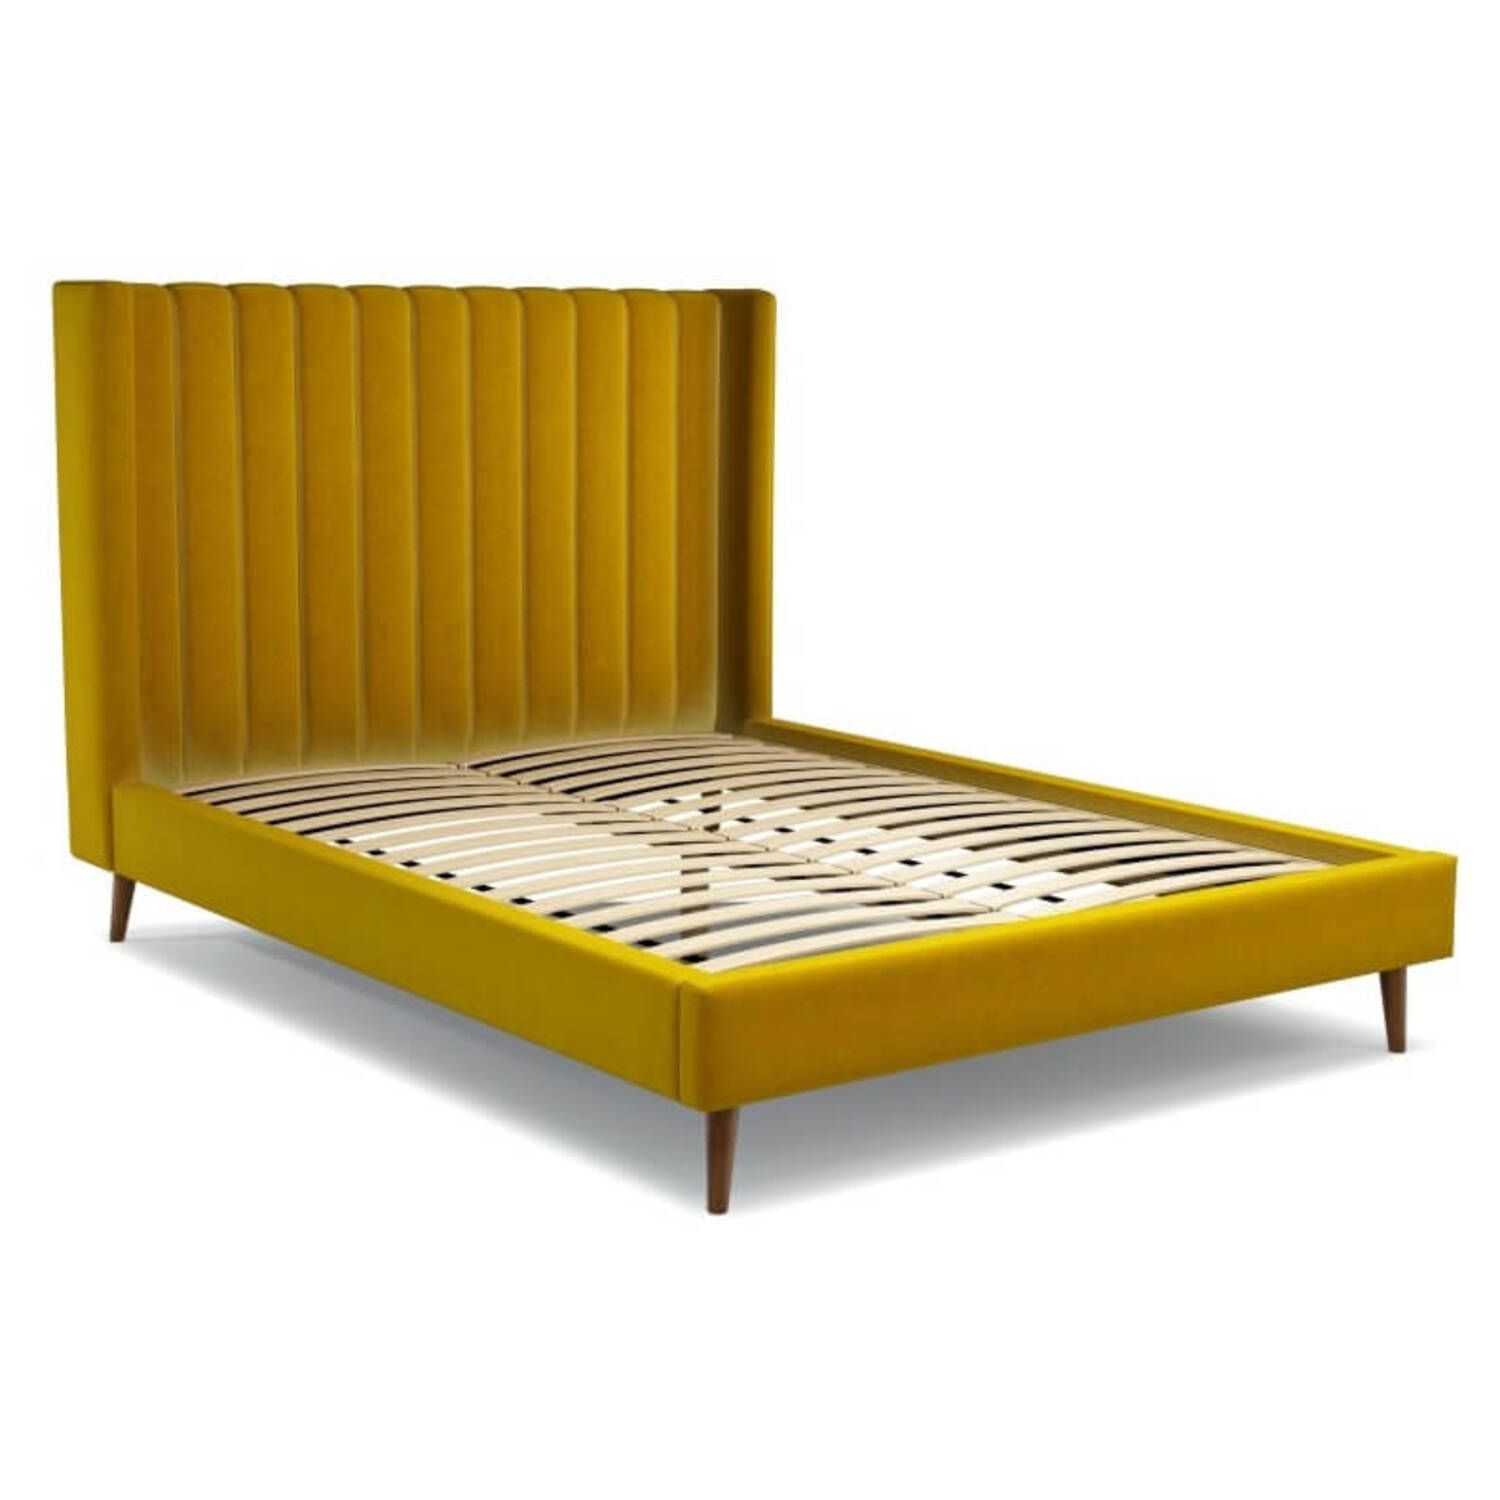 Кровать Cory на деревянных ножках, желтая